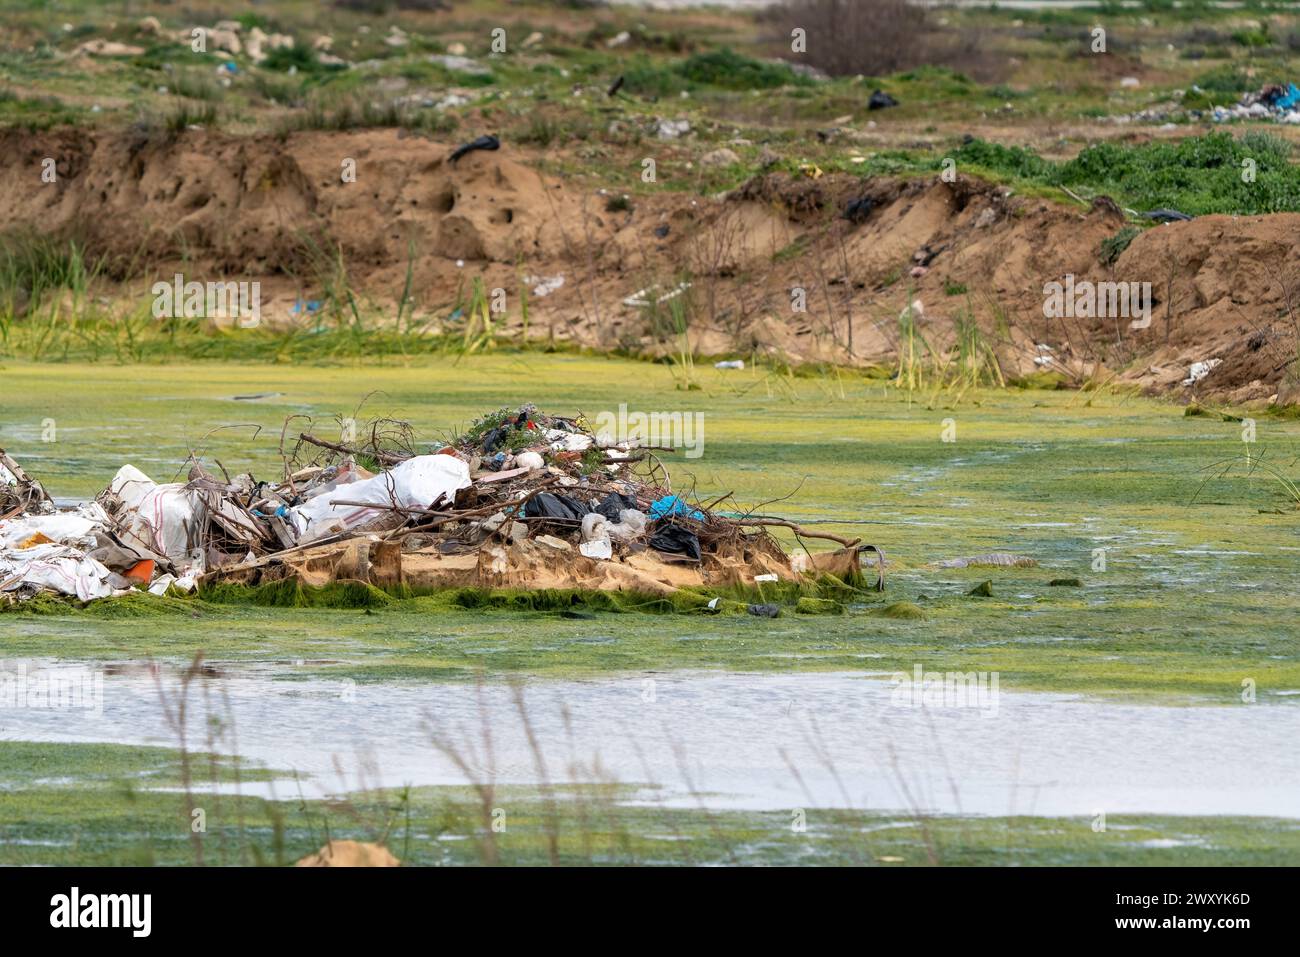 Rifiuti e rifiuti provenienti dalle strutture turistiche vengono gettati negli habitat degli uccelli. Inquinamento delle zone umide, inquinamento chimico. Foto Stock